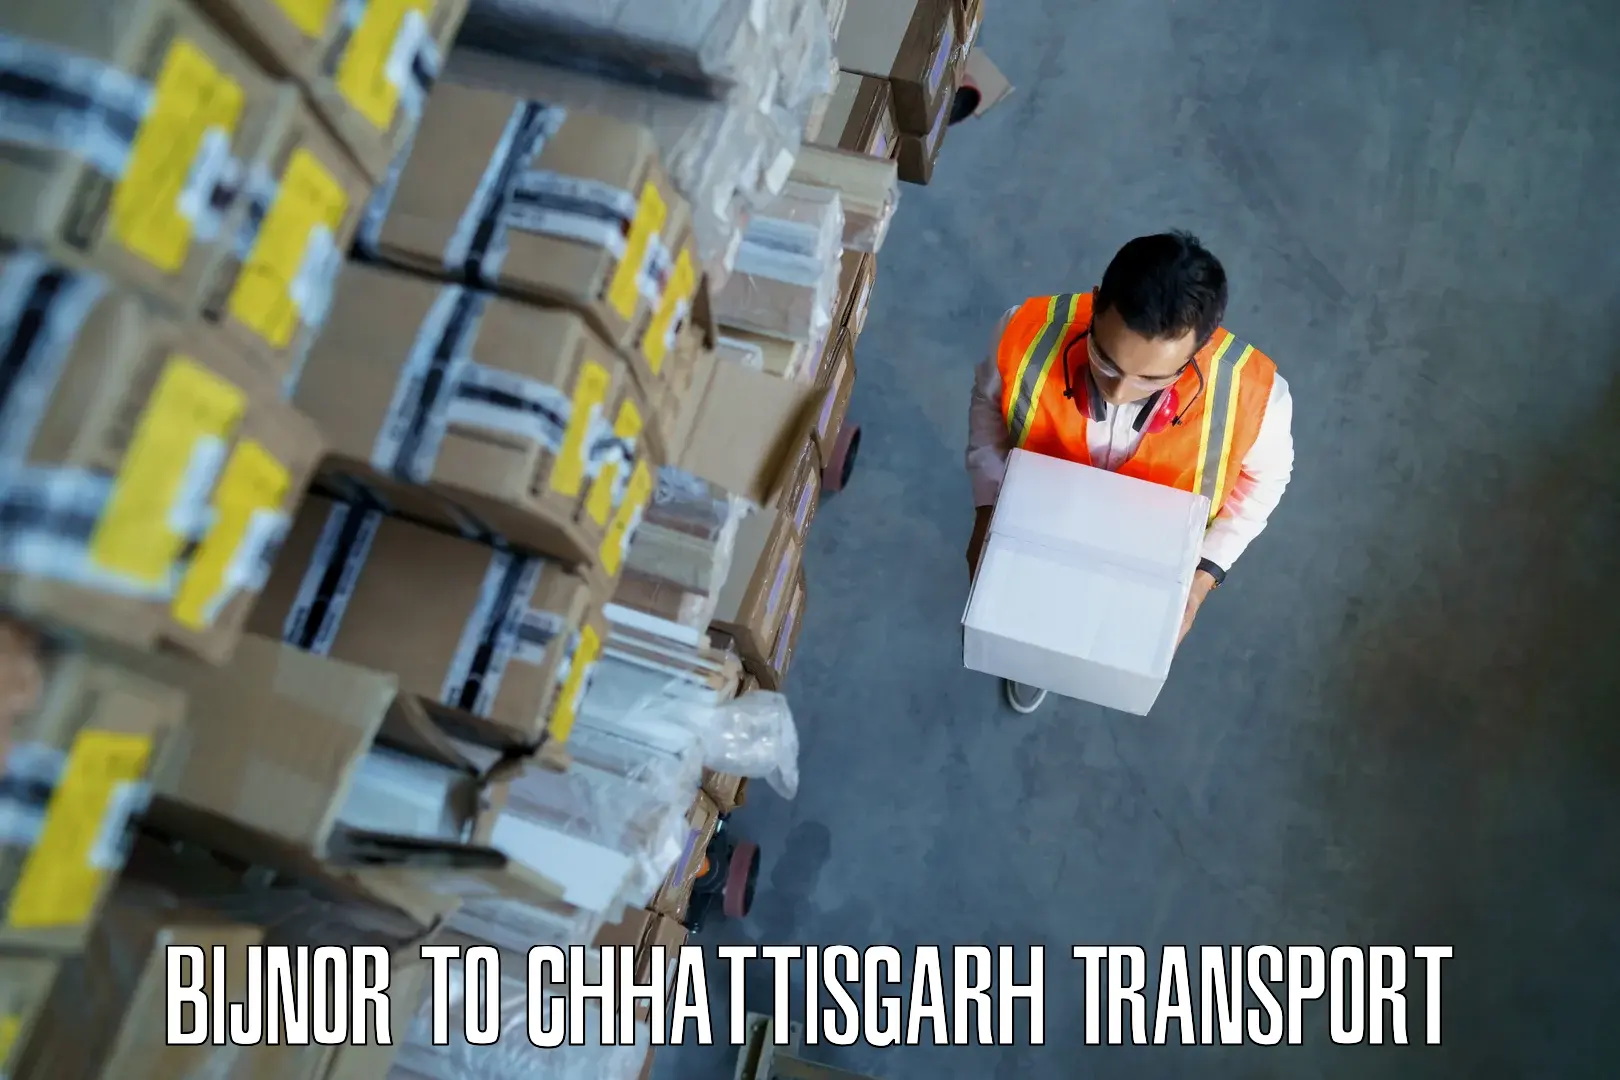 Vehicle courier services Bijnor to Bijapur Chhattisgarh